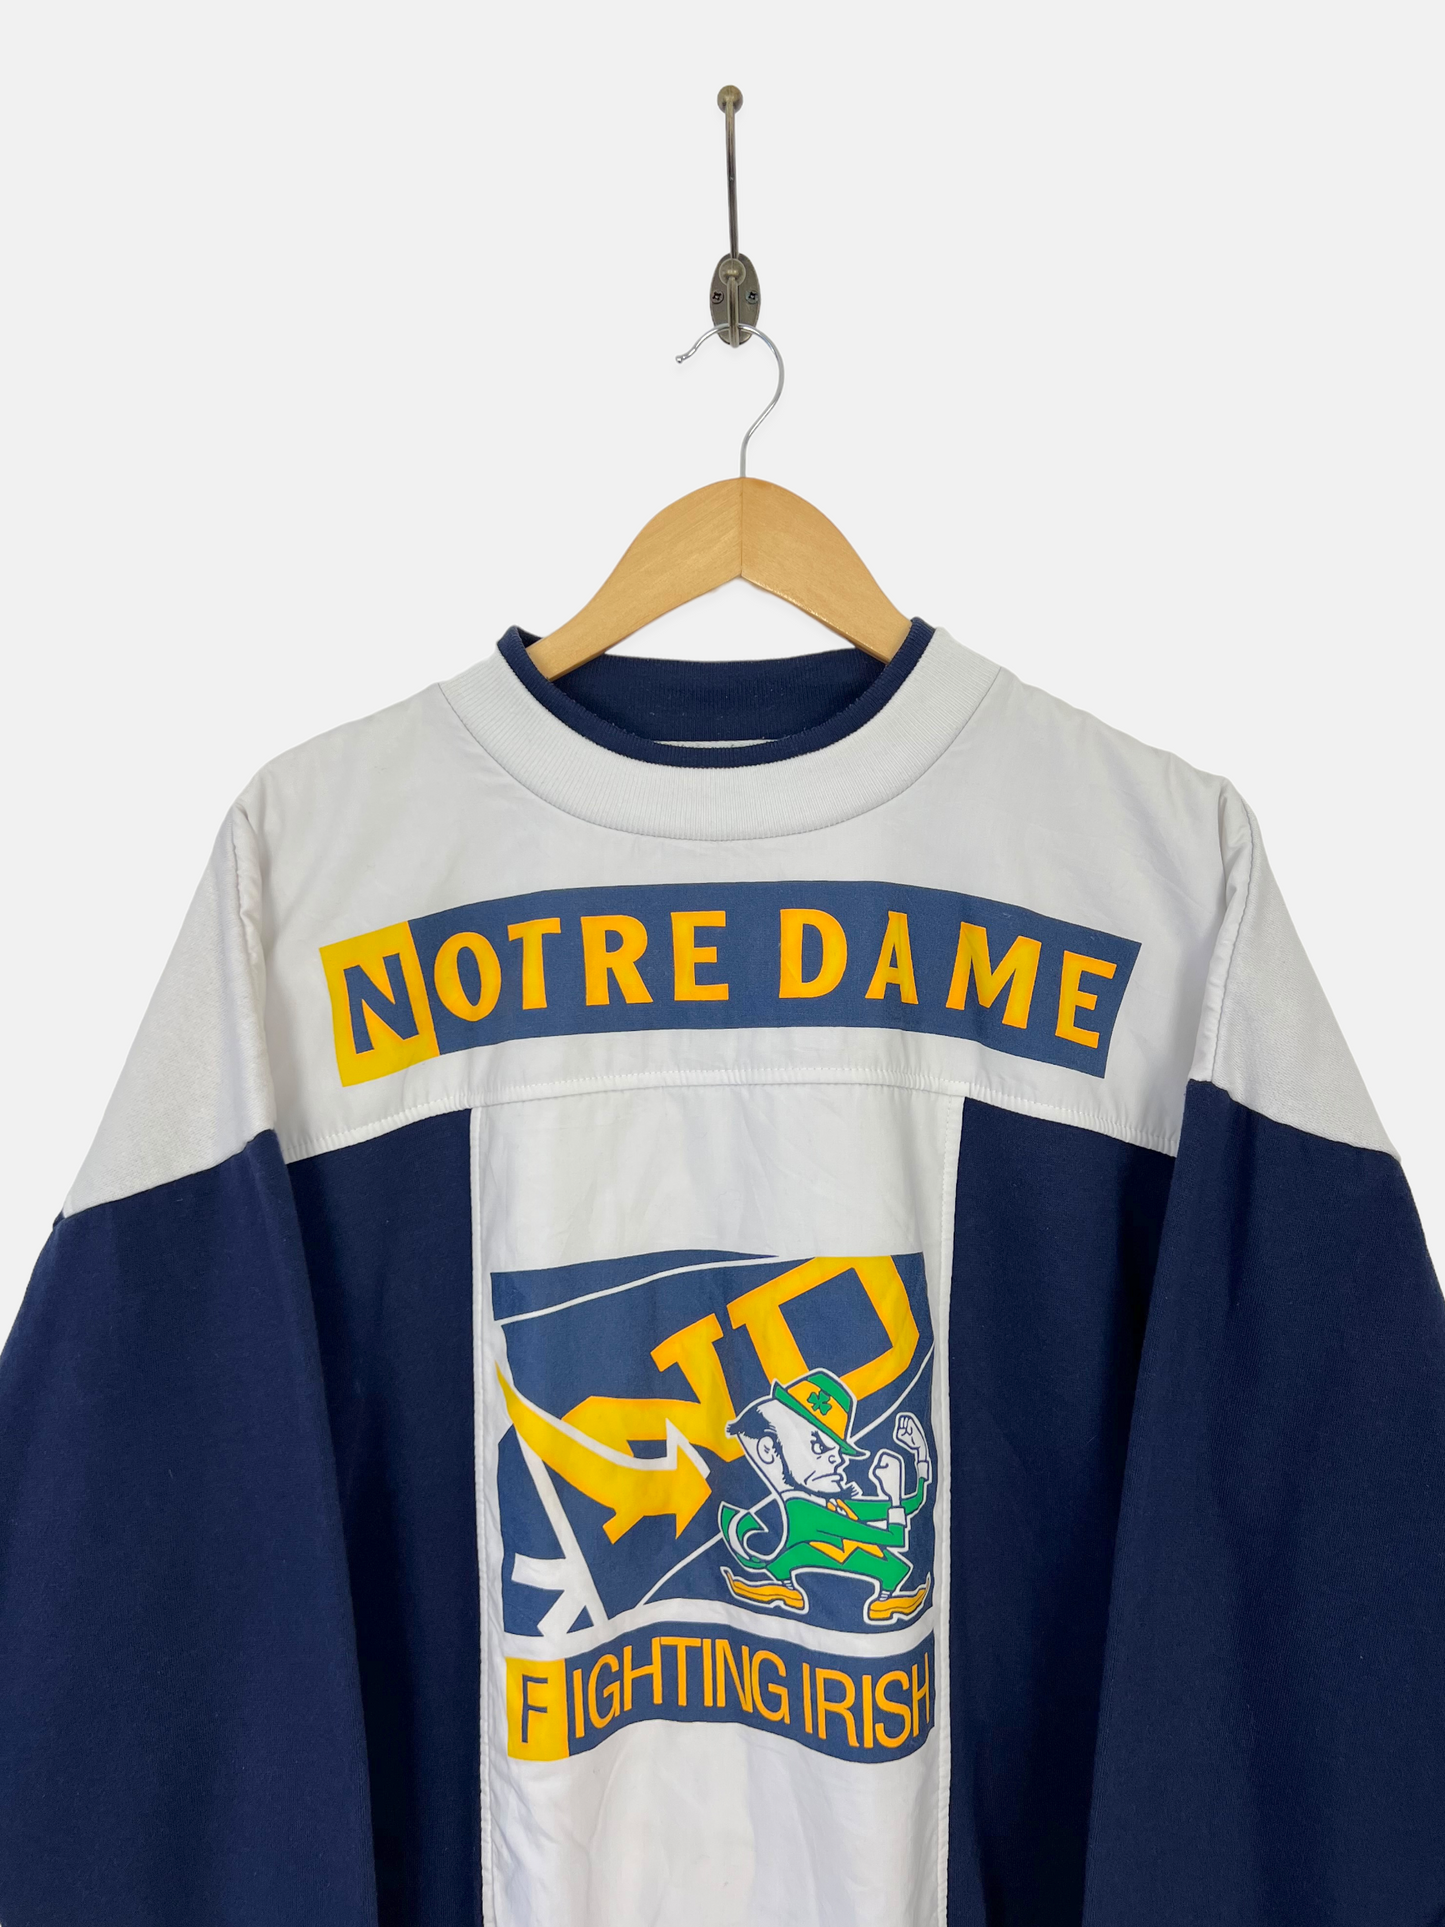 90s Notre Dame University Vintage Sweatshirt Size 10